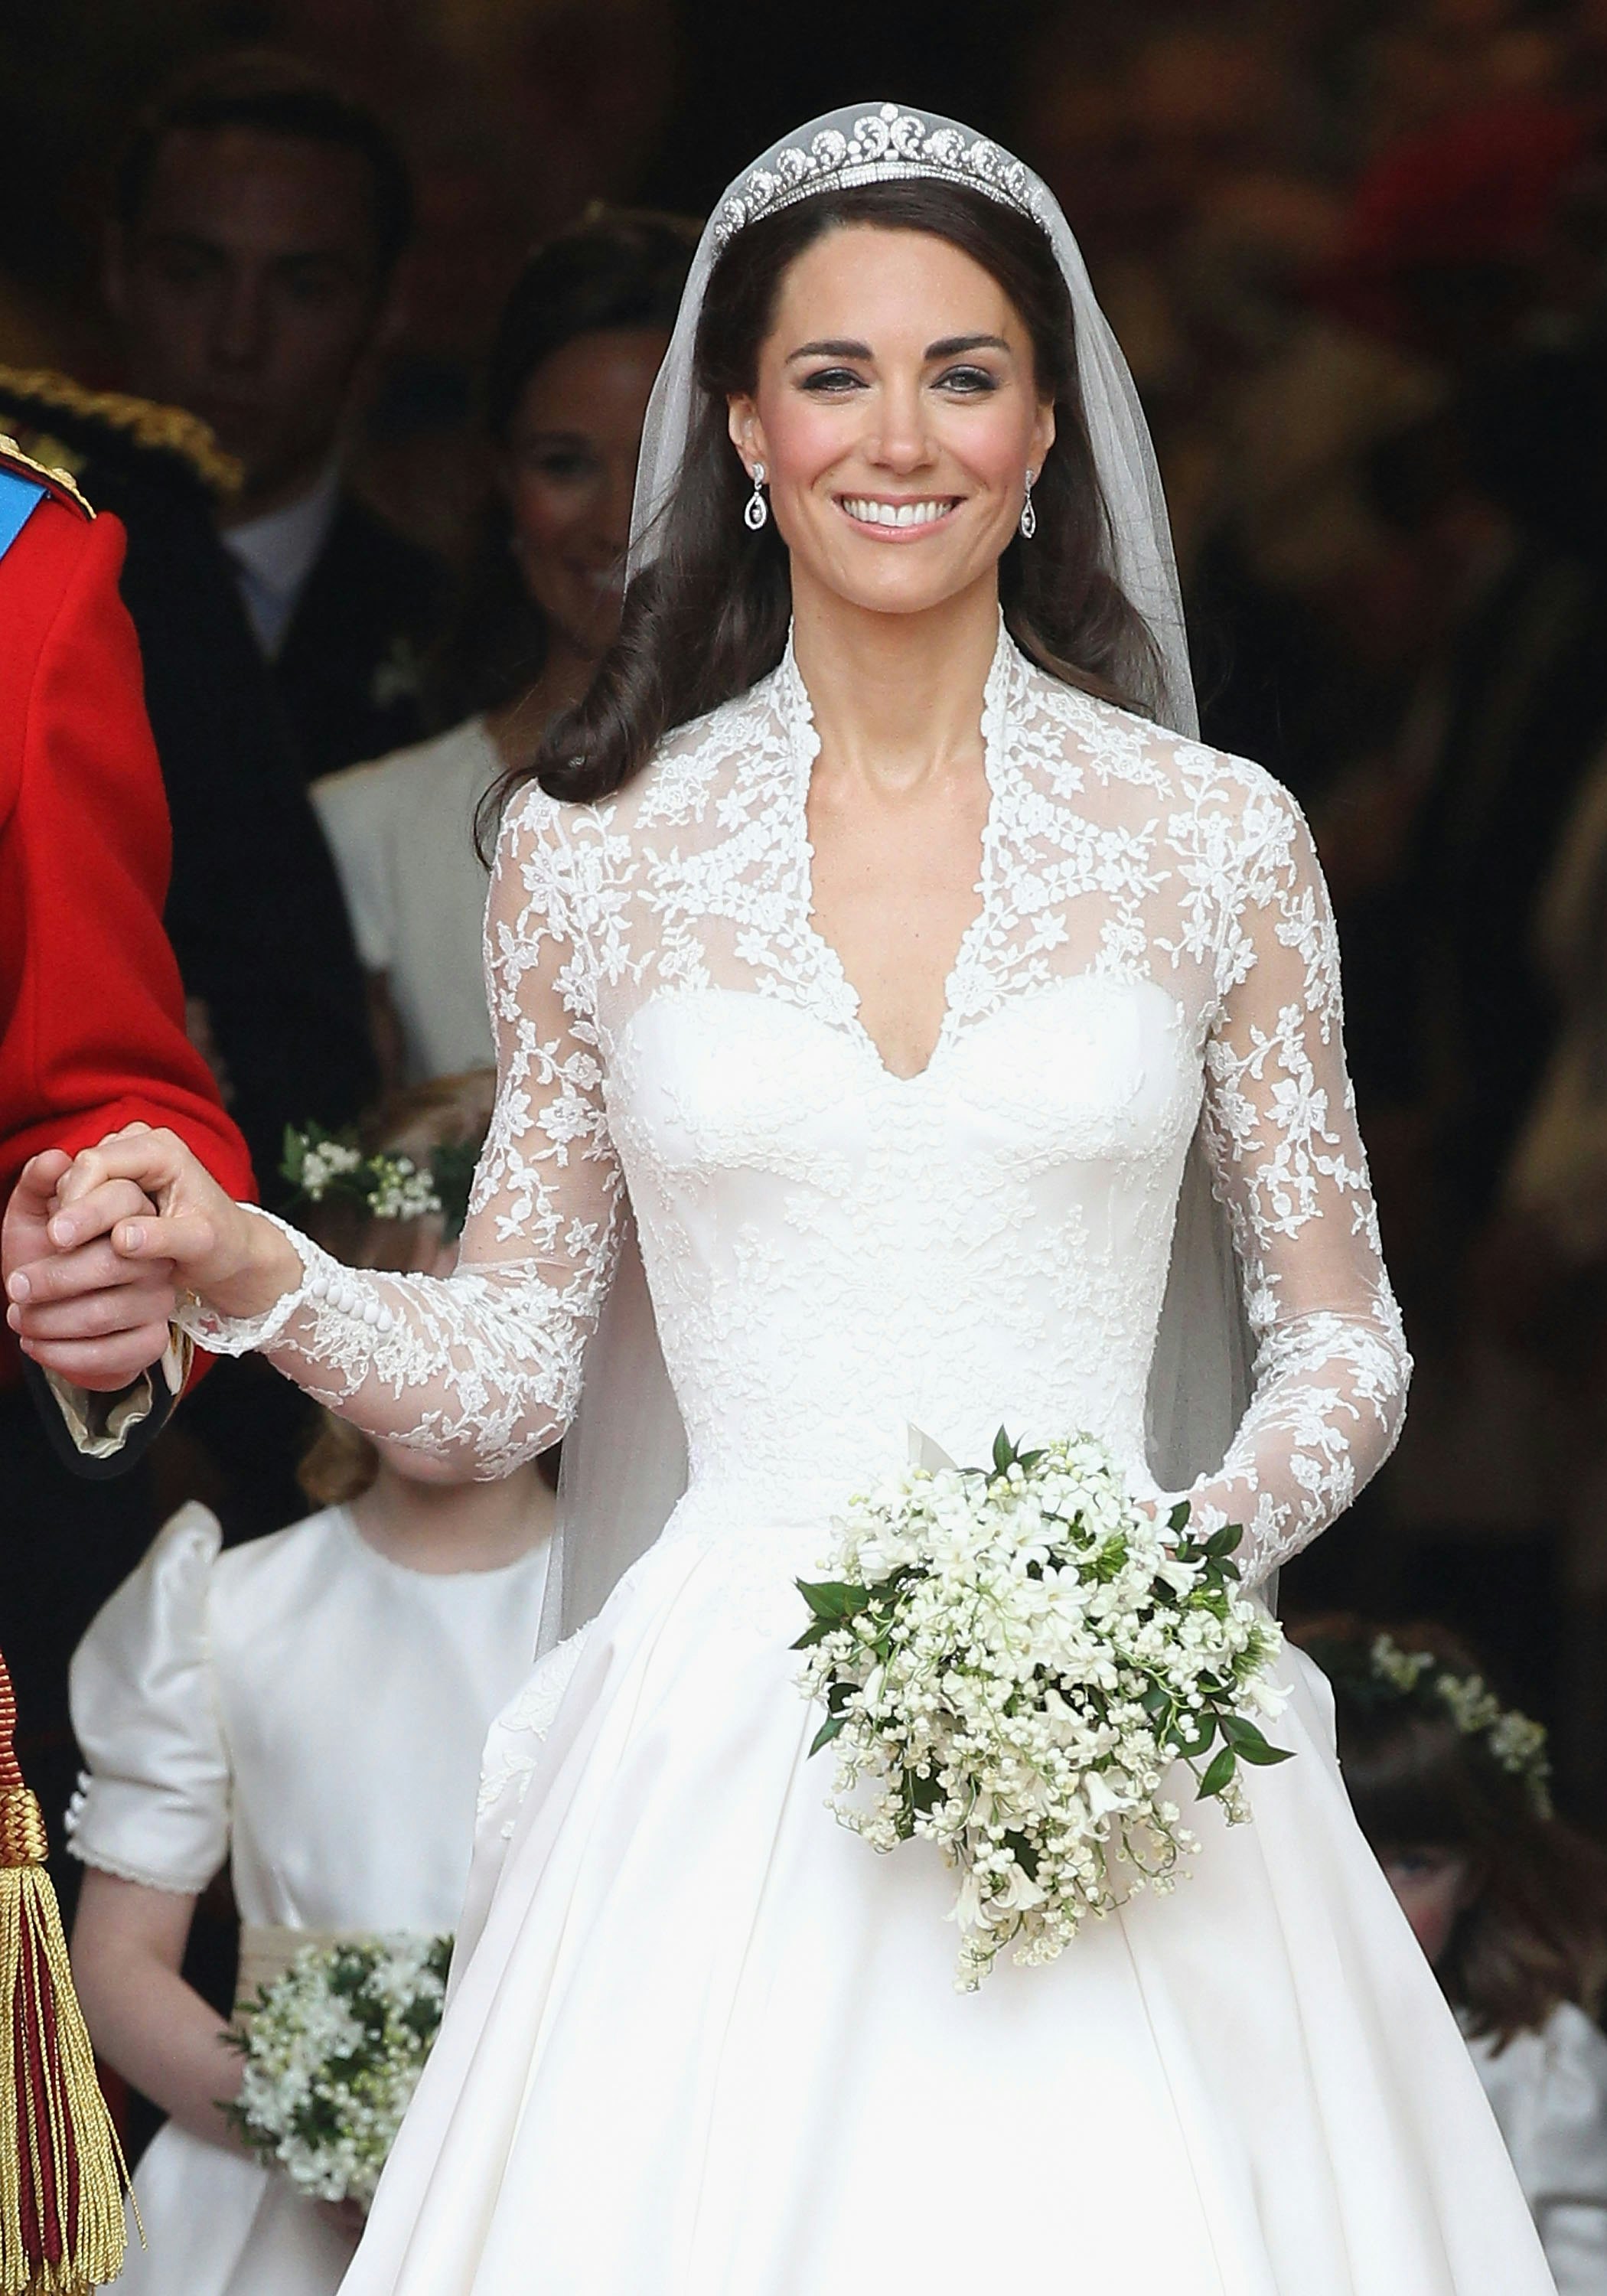 Kate Middleton's Wedding Tiara 